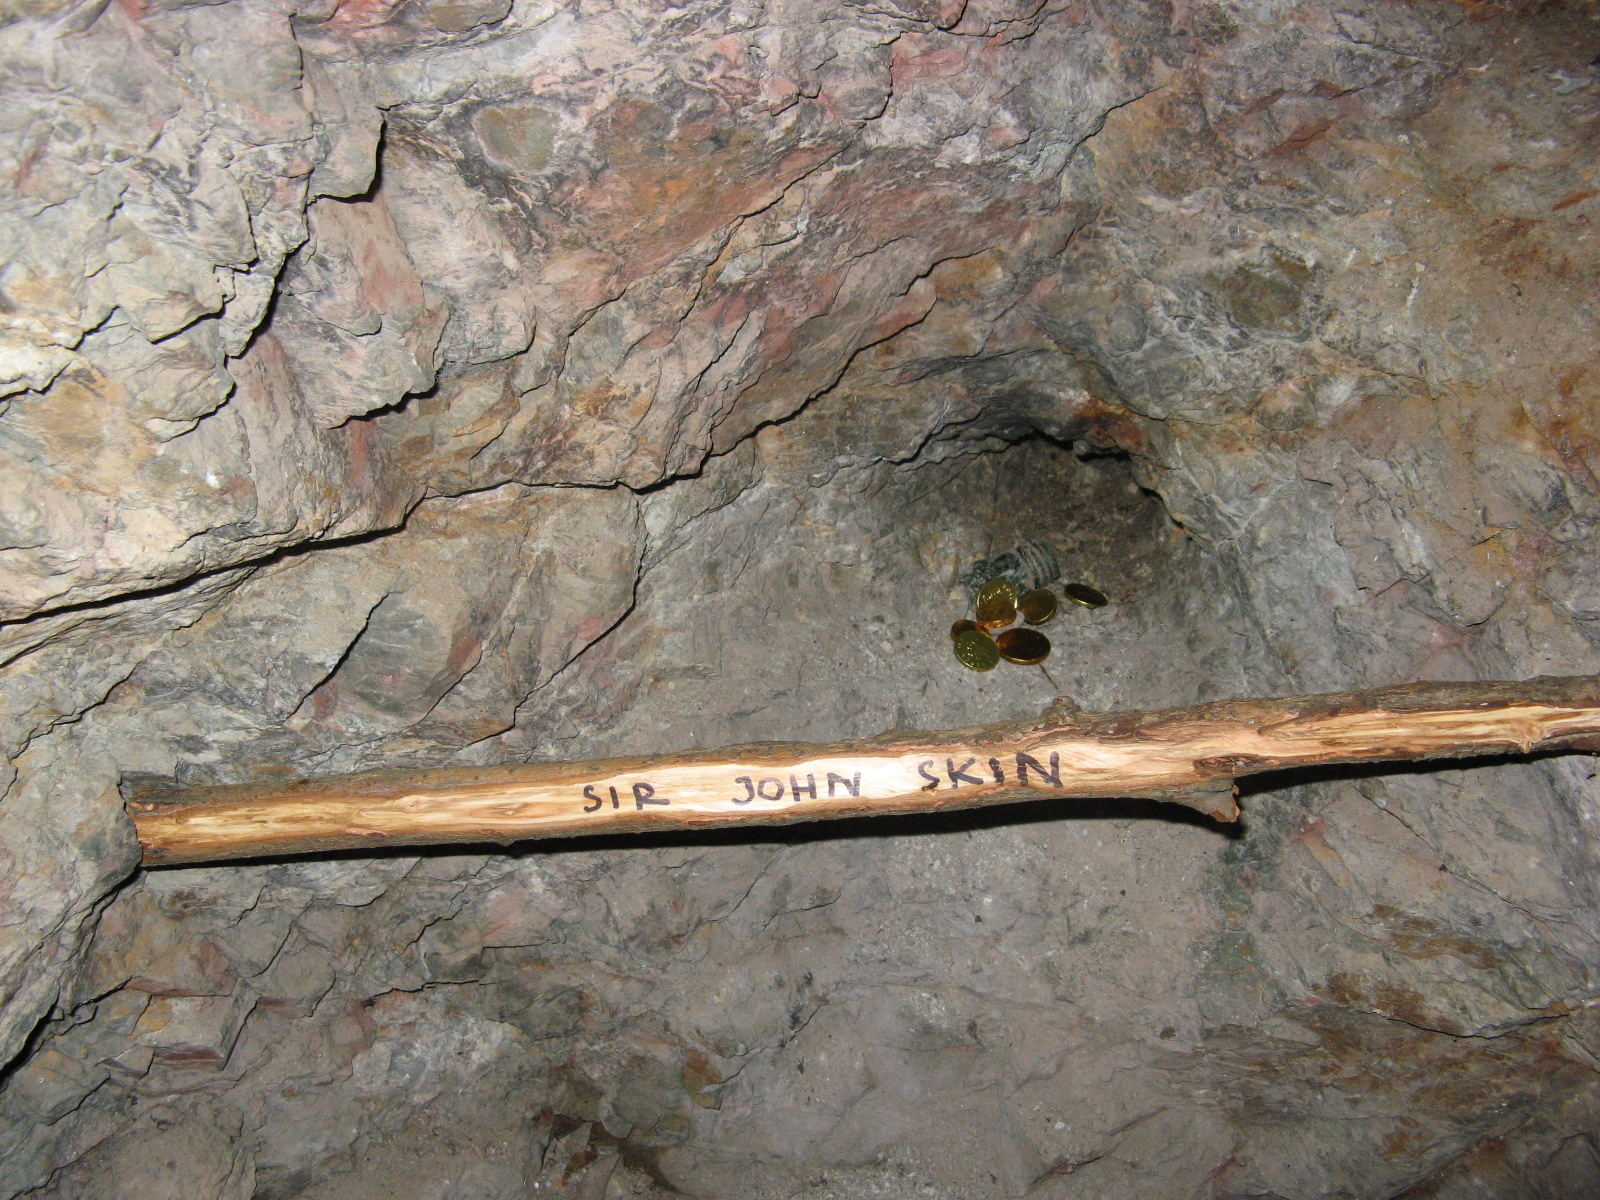 Část pokladu v jeskyni sira Johna Skina